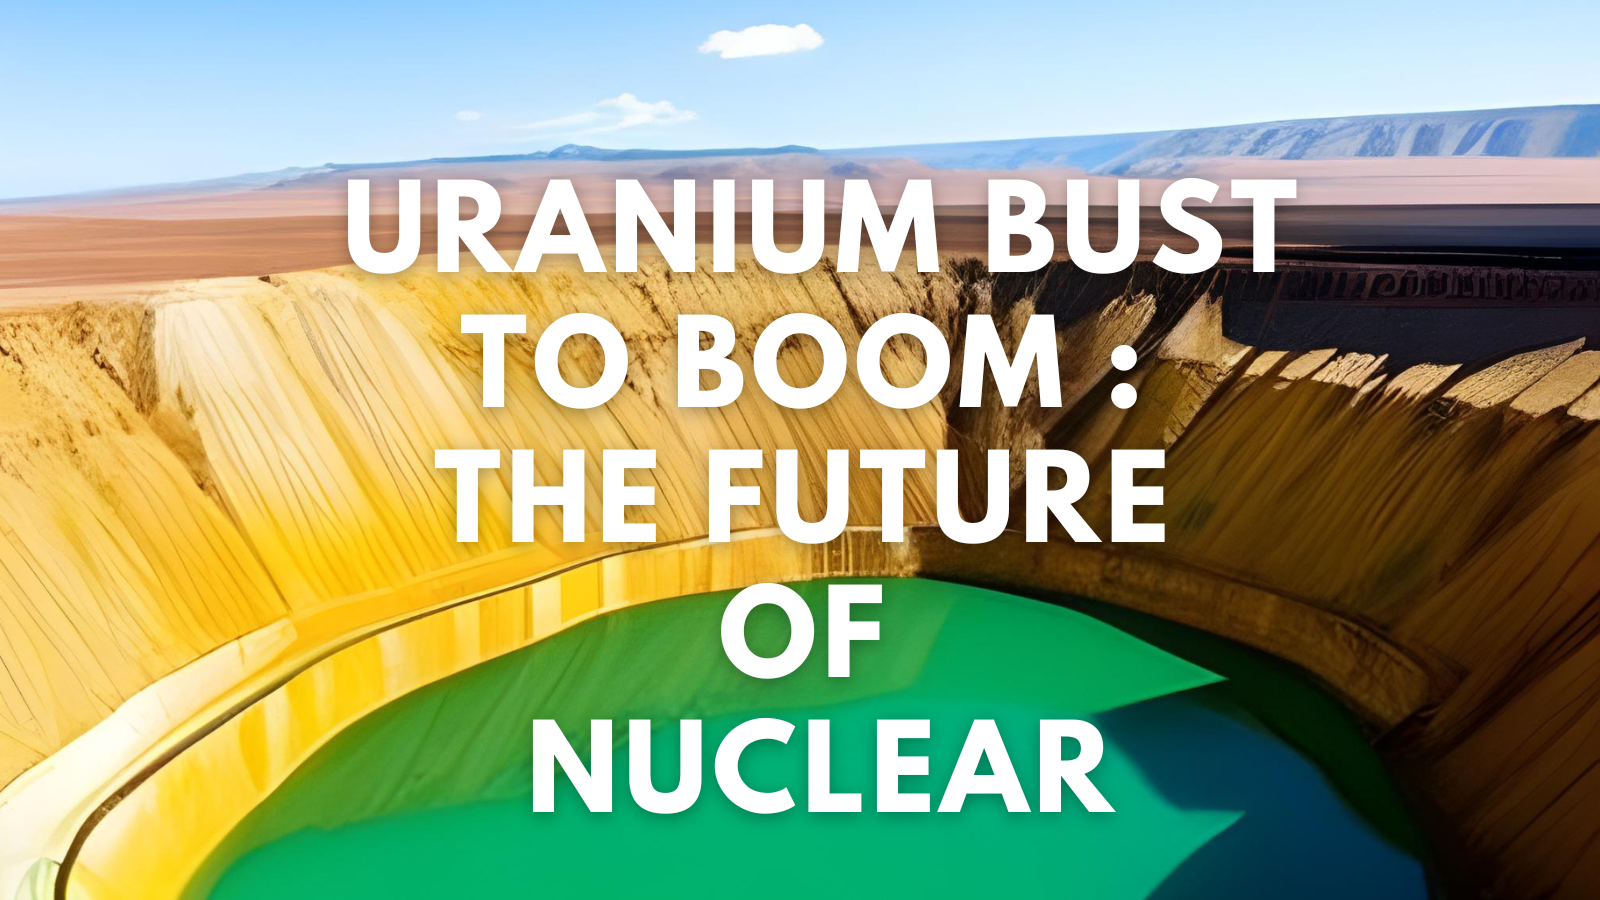 Future of nuclear